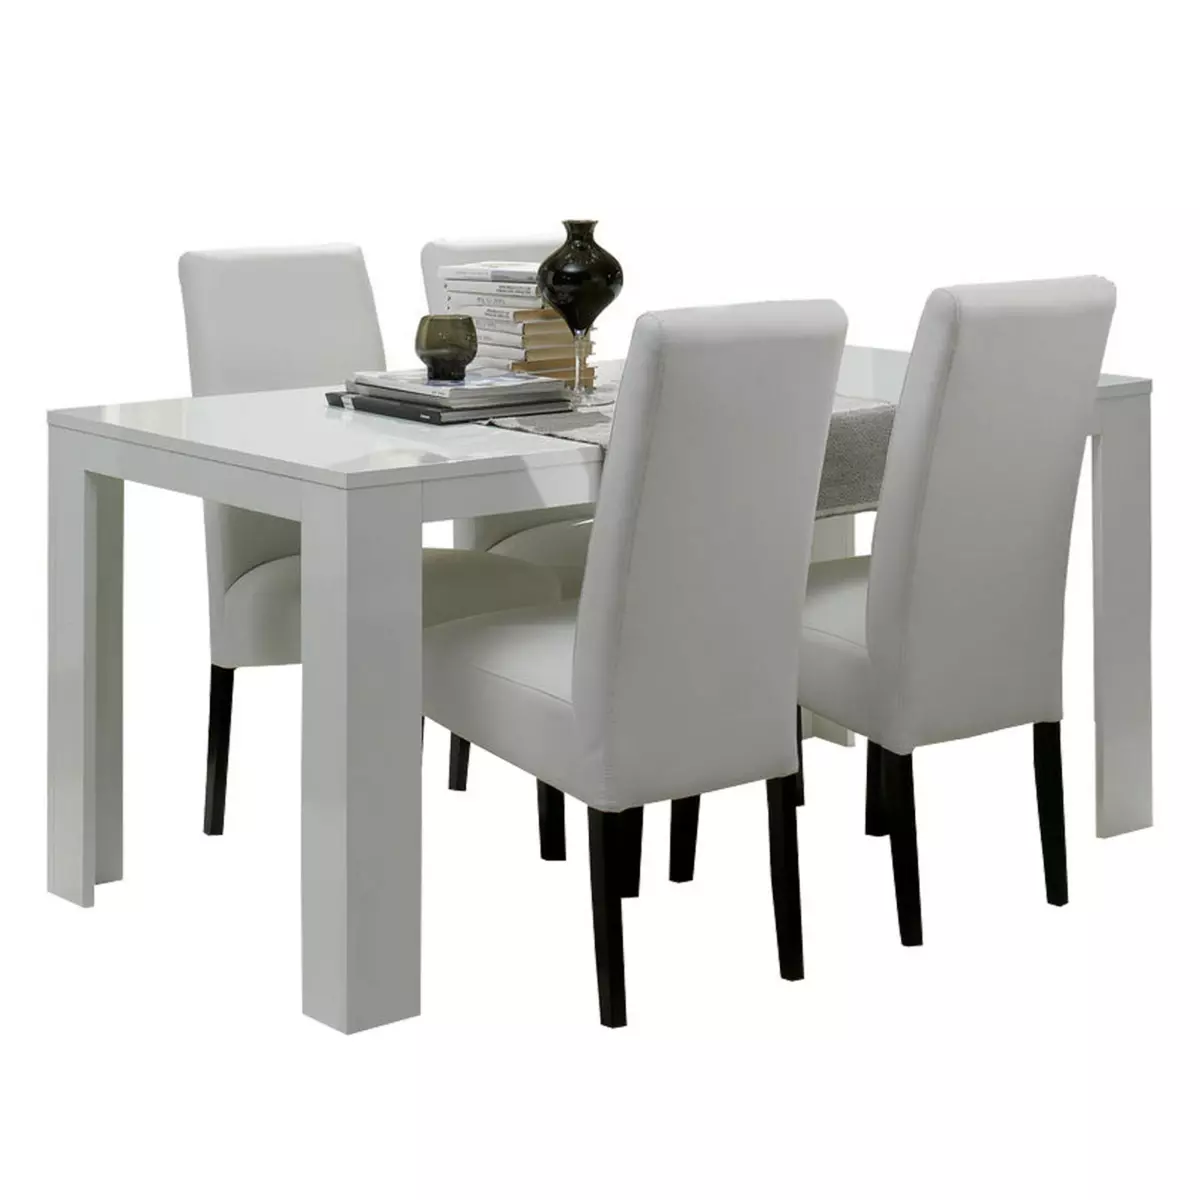 Table L.160 cm. PISA + 4 chaises.